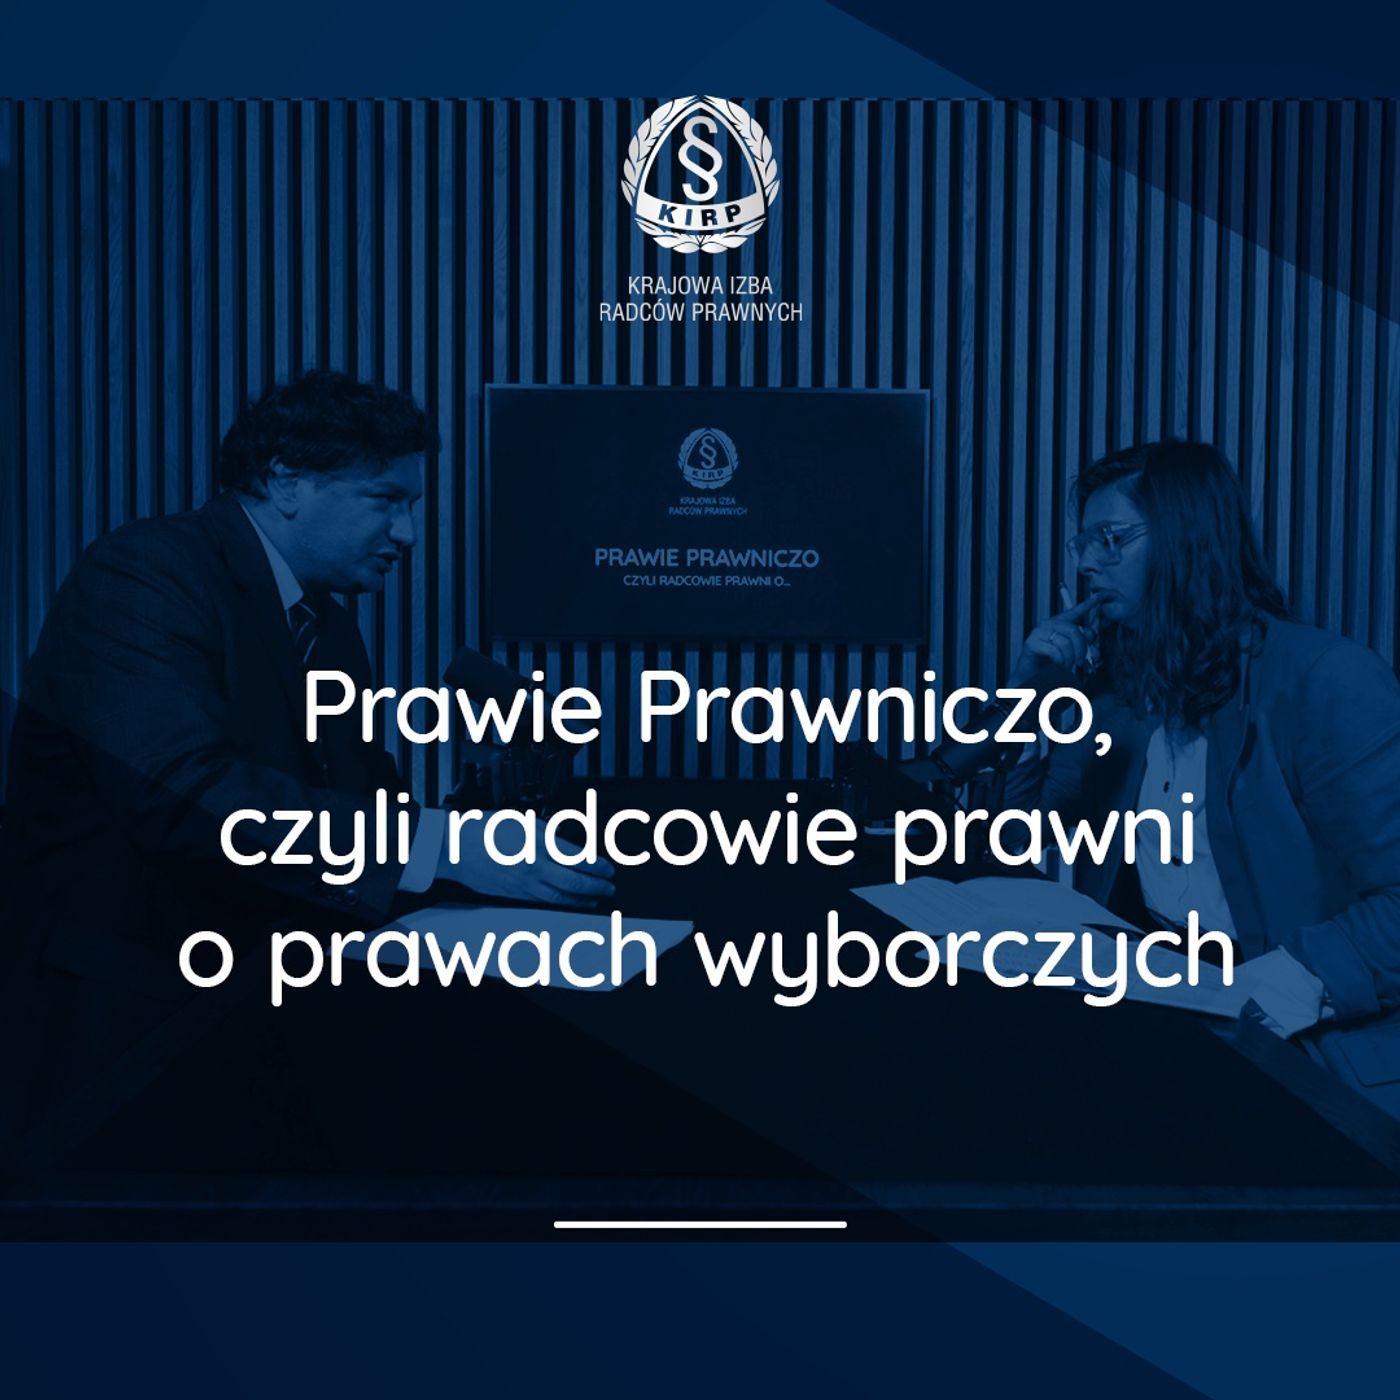 Prawie Prawniczo, czyli radcowie prawni o prawach wyborczych – r.pr. Mirosław Wróblewski